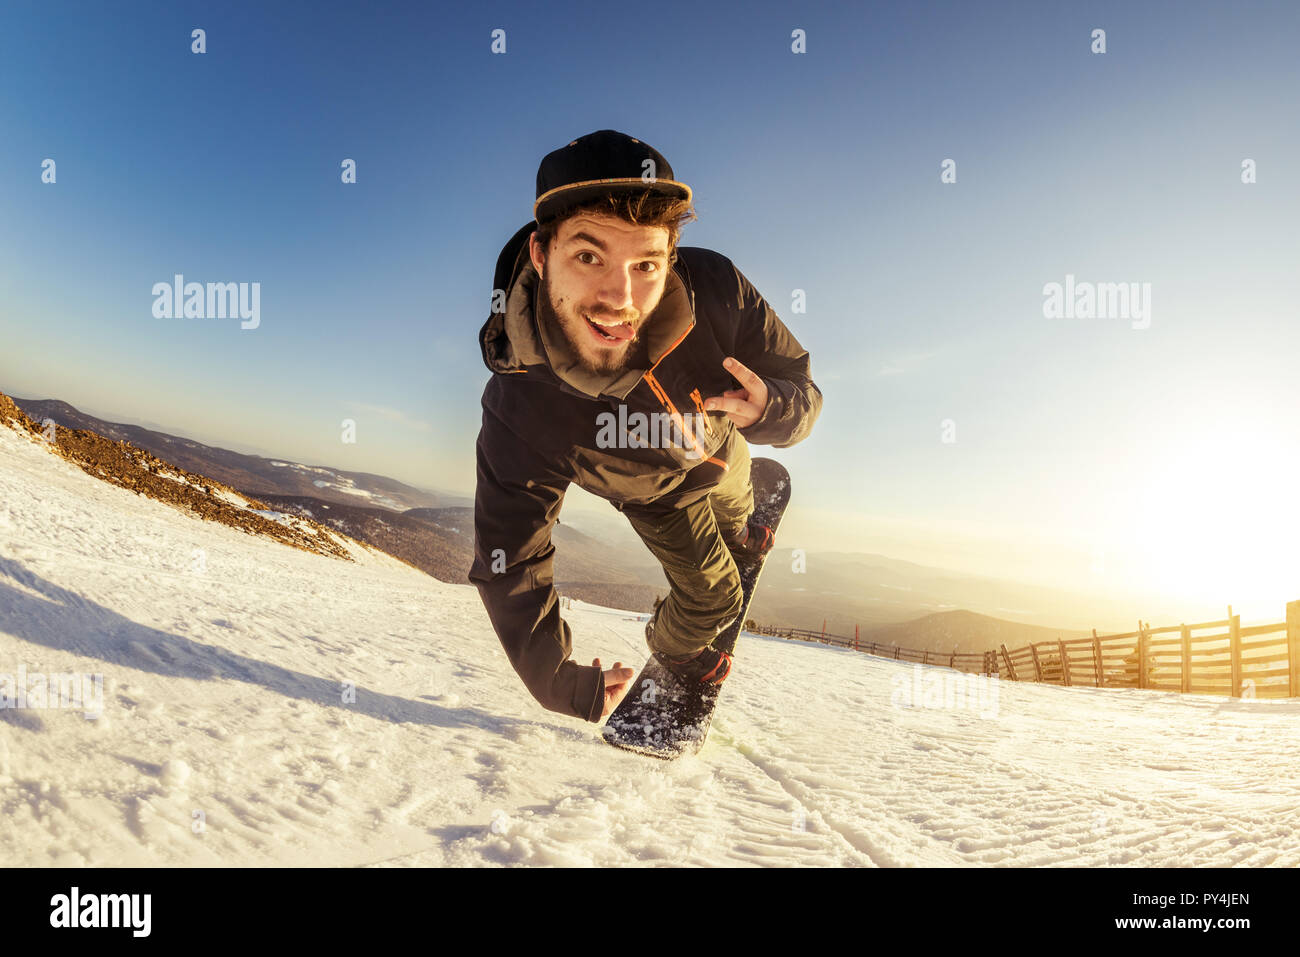 Jeune homme snowboarder saute et fait truc ludique Banque D'Images